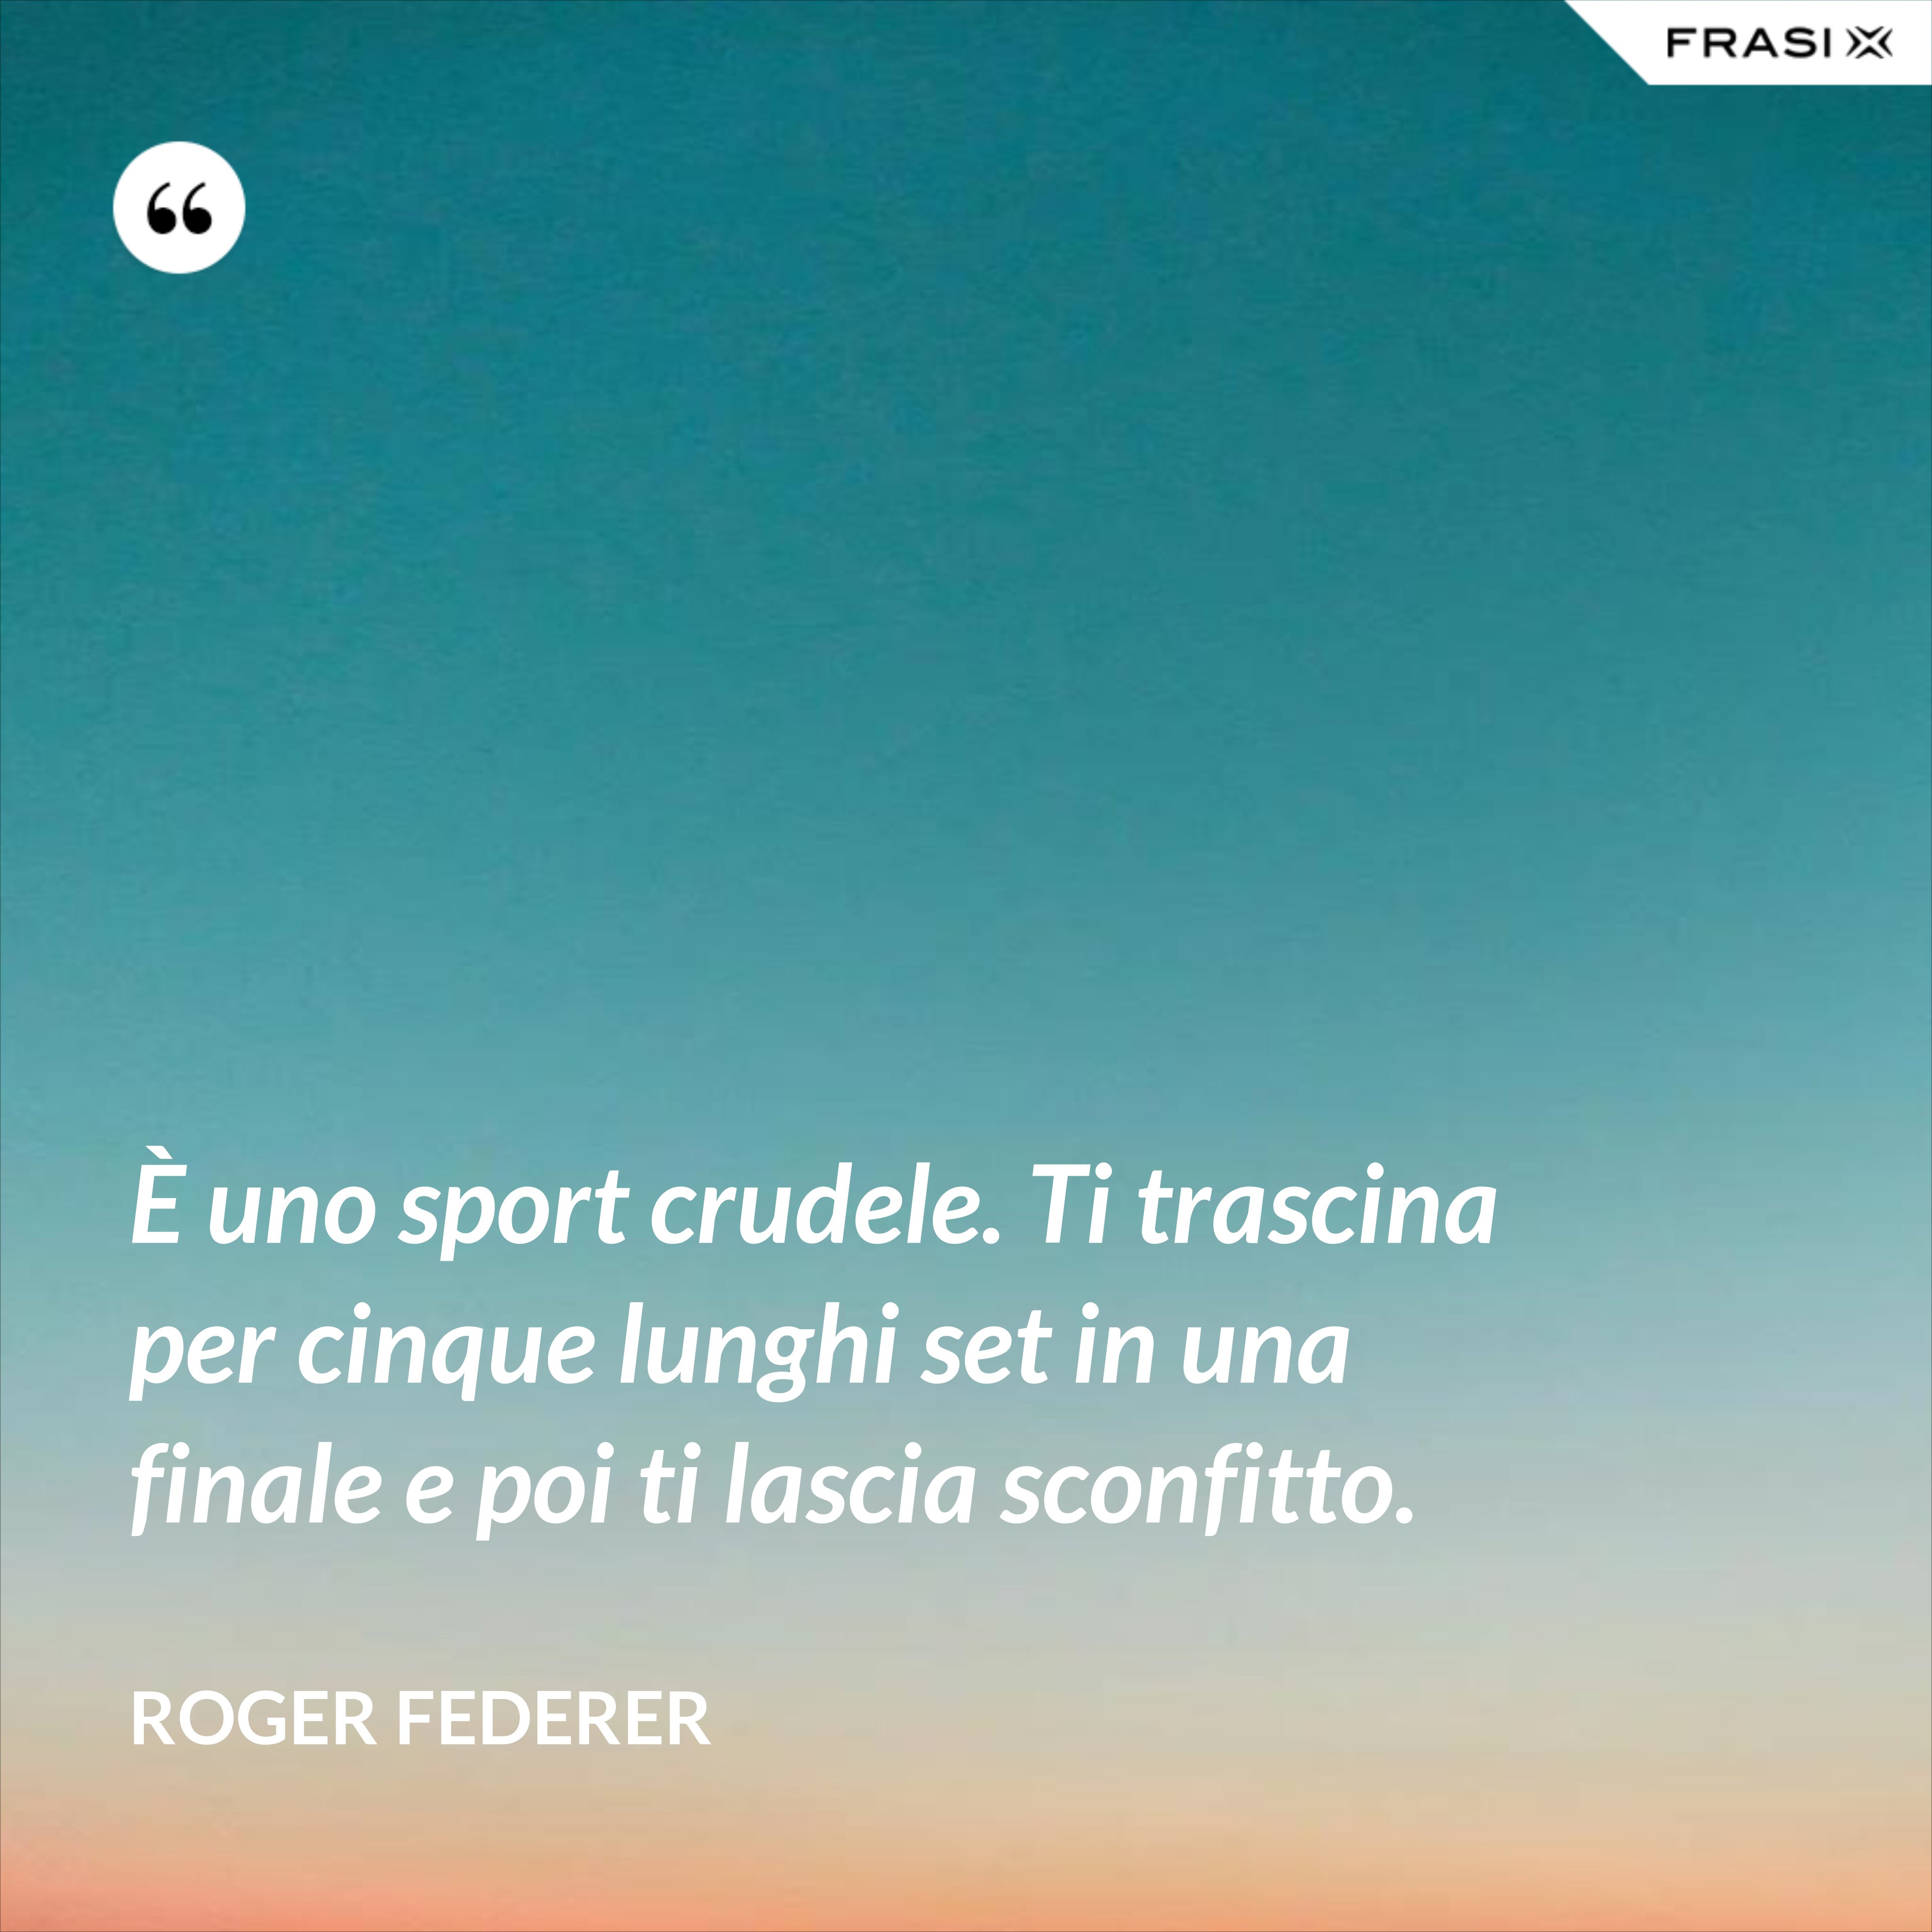 È uno sport crudele. Ti trascina per cinque lunghi set in una finale e poi ti lascia sconfitto. - Roger Federer